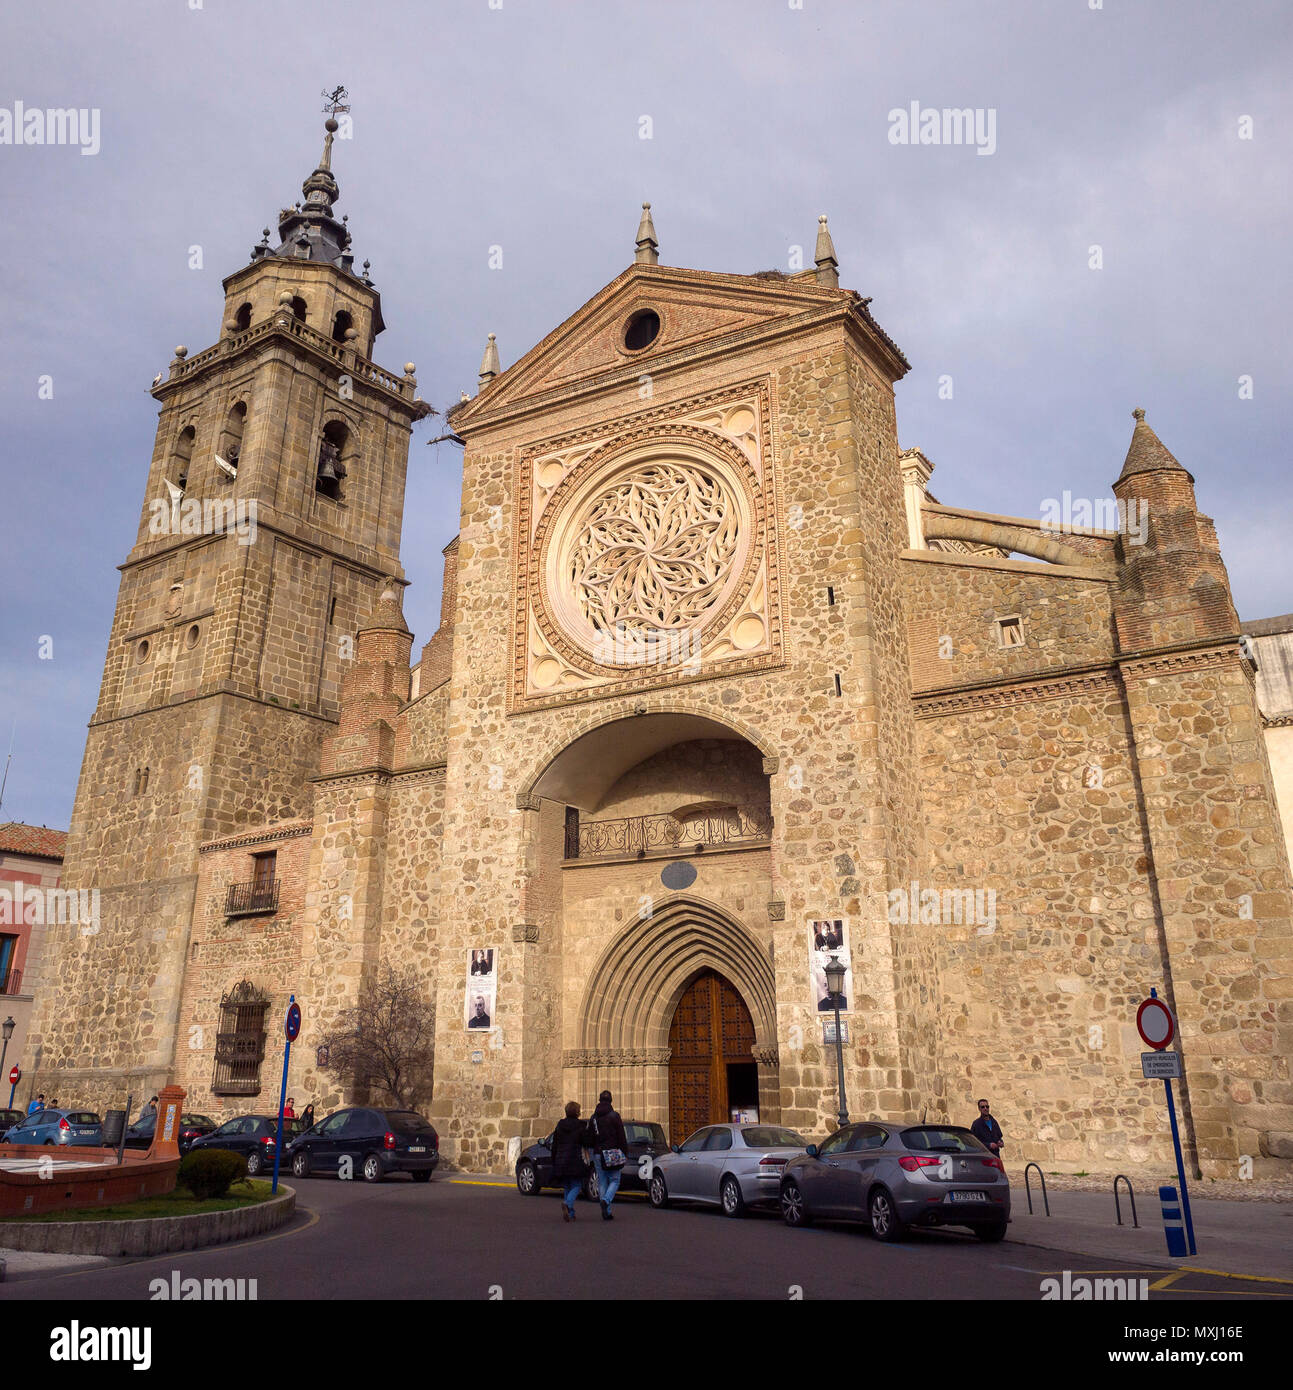 Iglesia de Santa María la Mayor La Colegial. Talavera de la Reina. Conjunto histórico artístico. Provincia de Toledo. España. Stock Photo